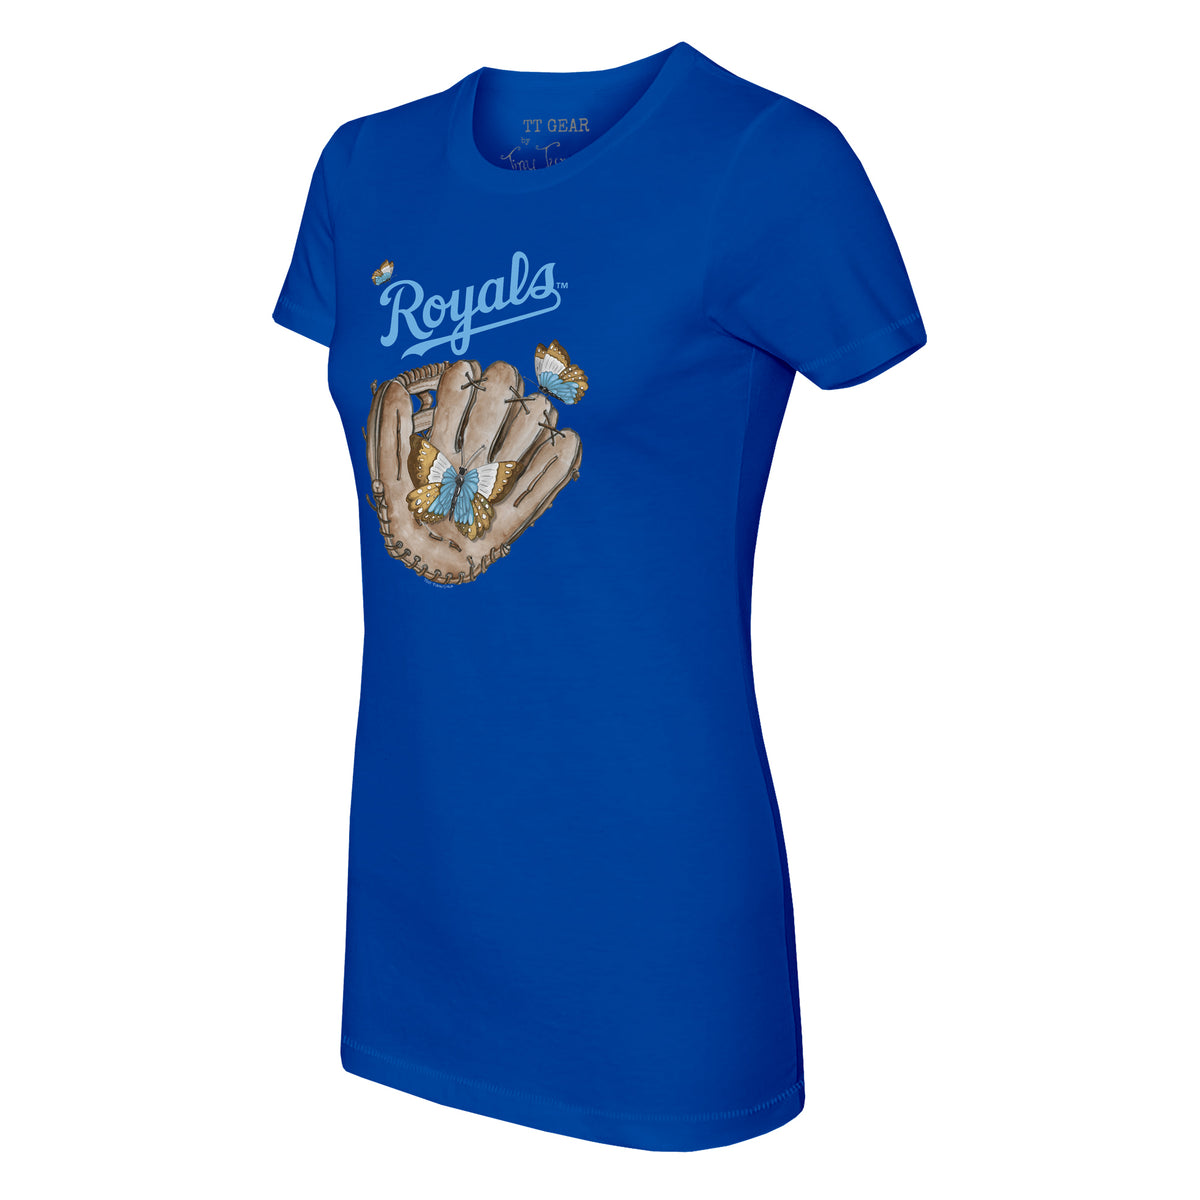 Kansas City Royals Butterfly Glove Tee Shirt